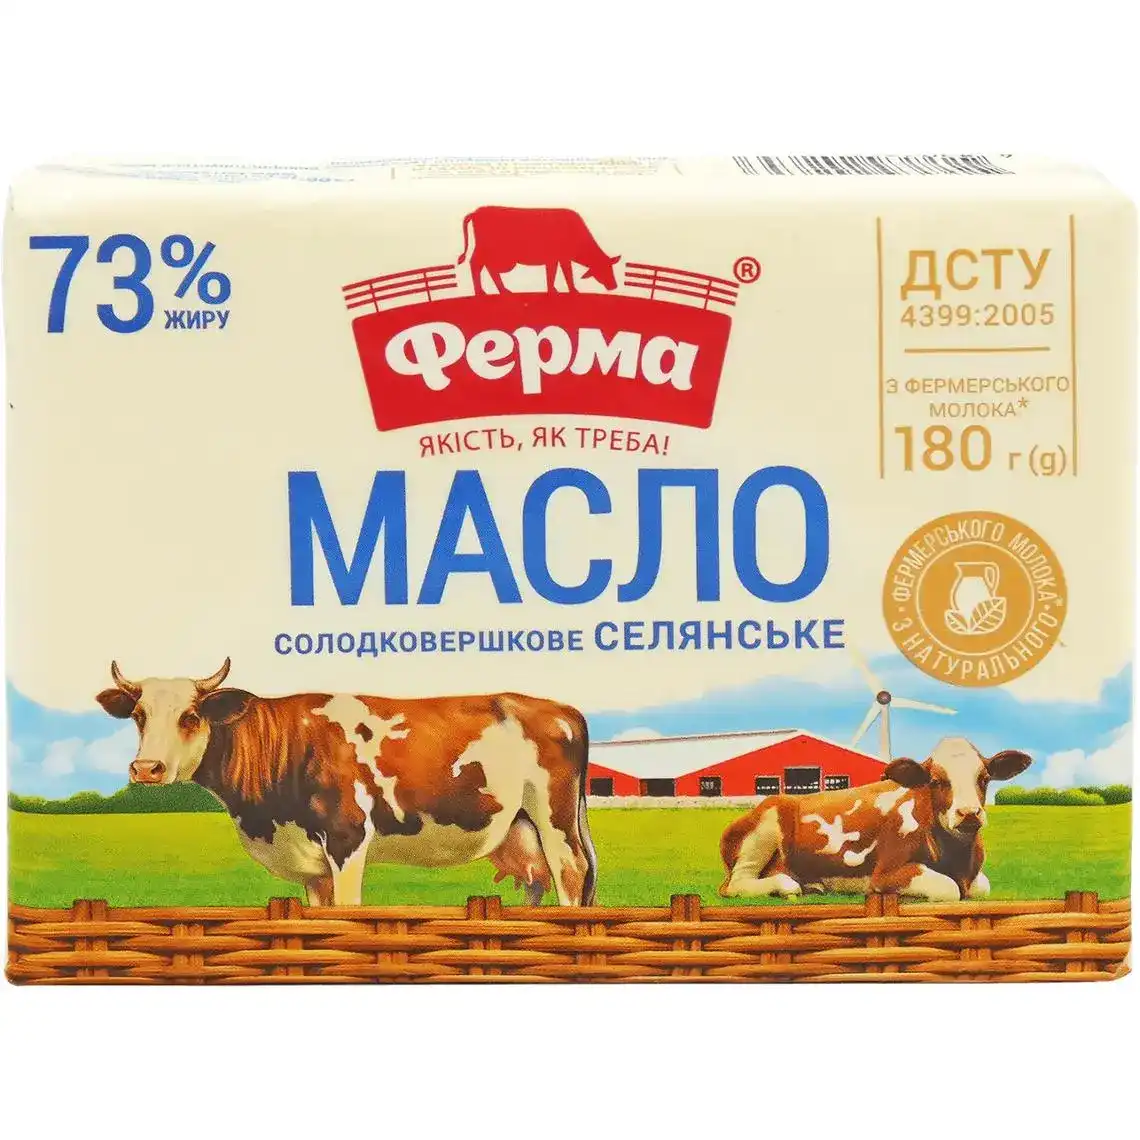 Масло Ферма селянське солодковершкове 73% 180г